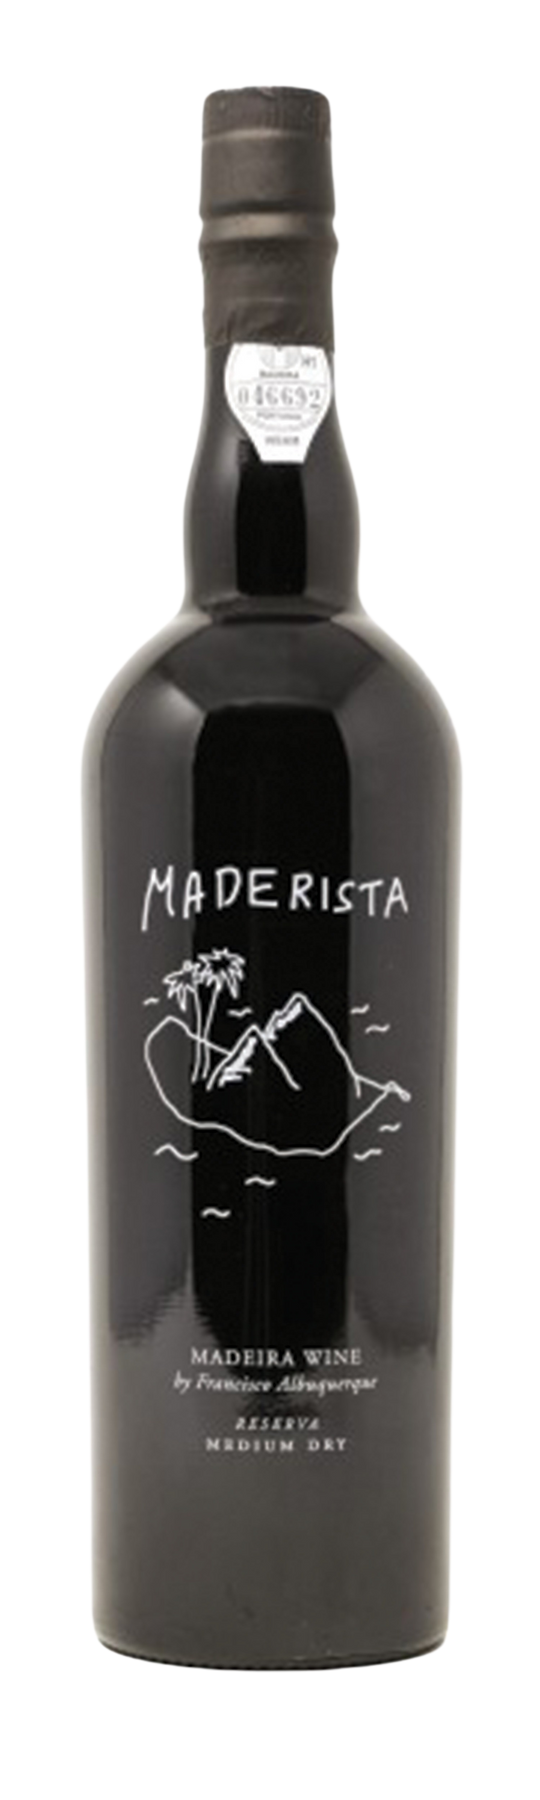 Maderista Medium Dry Tinta Negra Reserva 19% 75cl